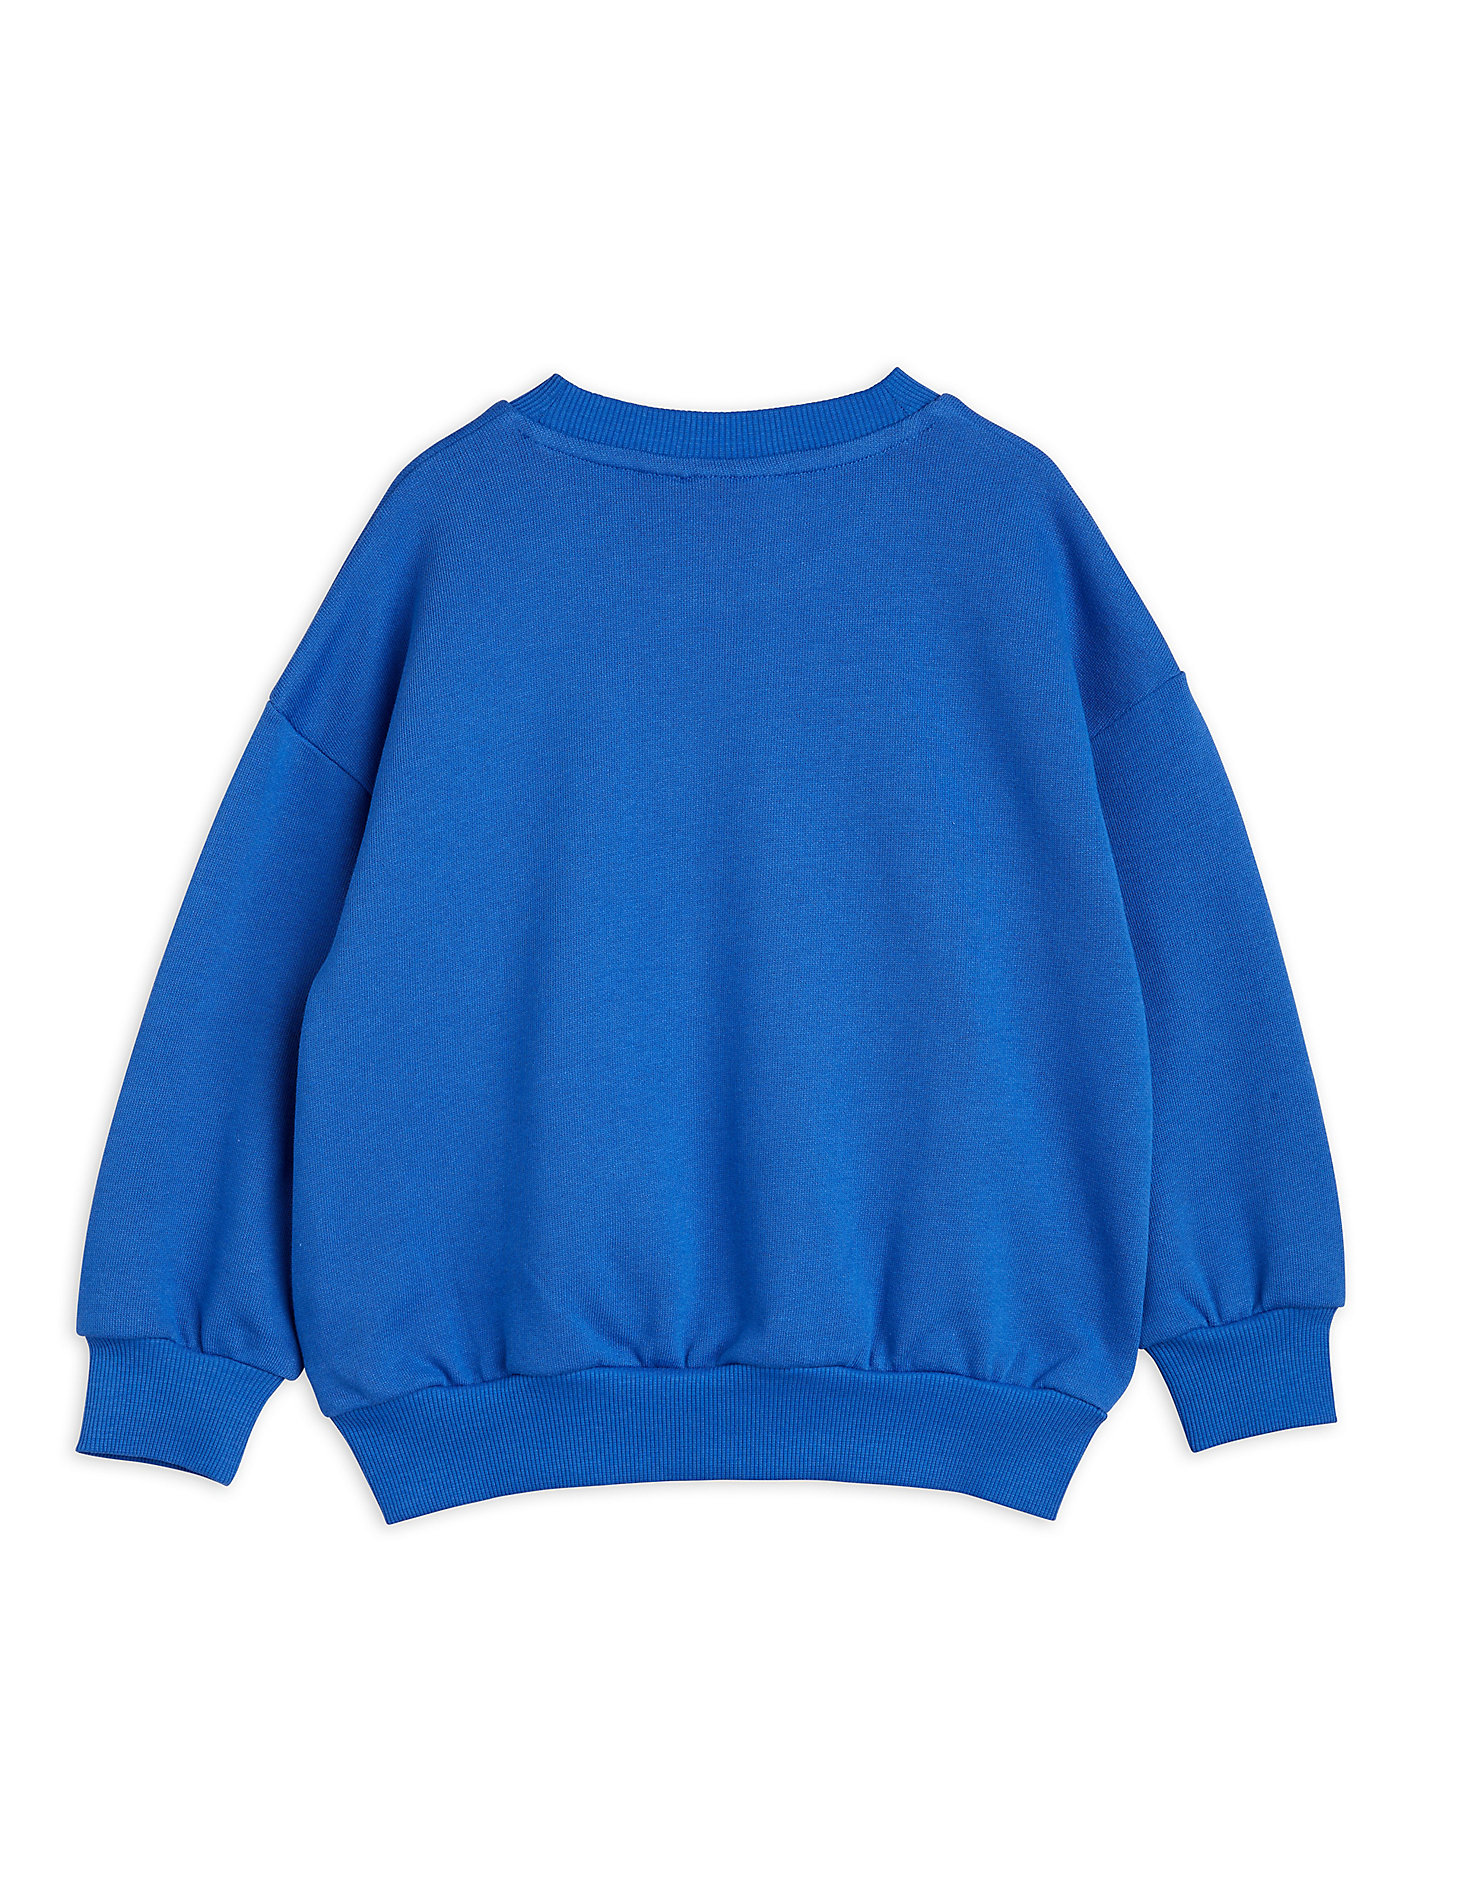 Mini Rodini x Wrangler Peace Dove Chenille Sweatshirt in Blue alternative view 1